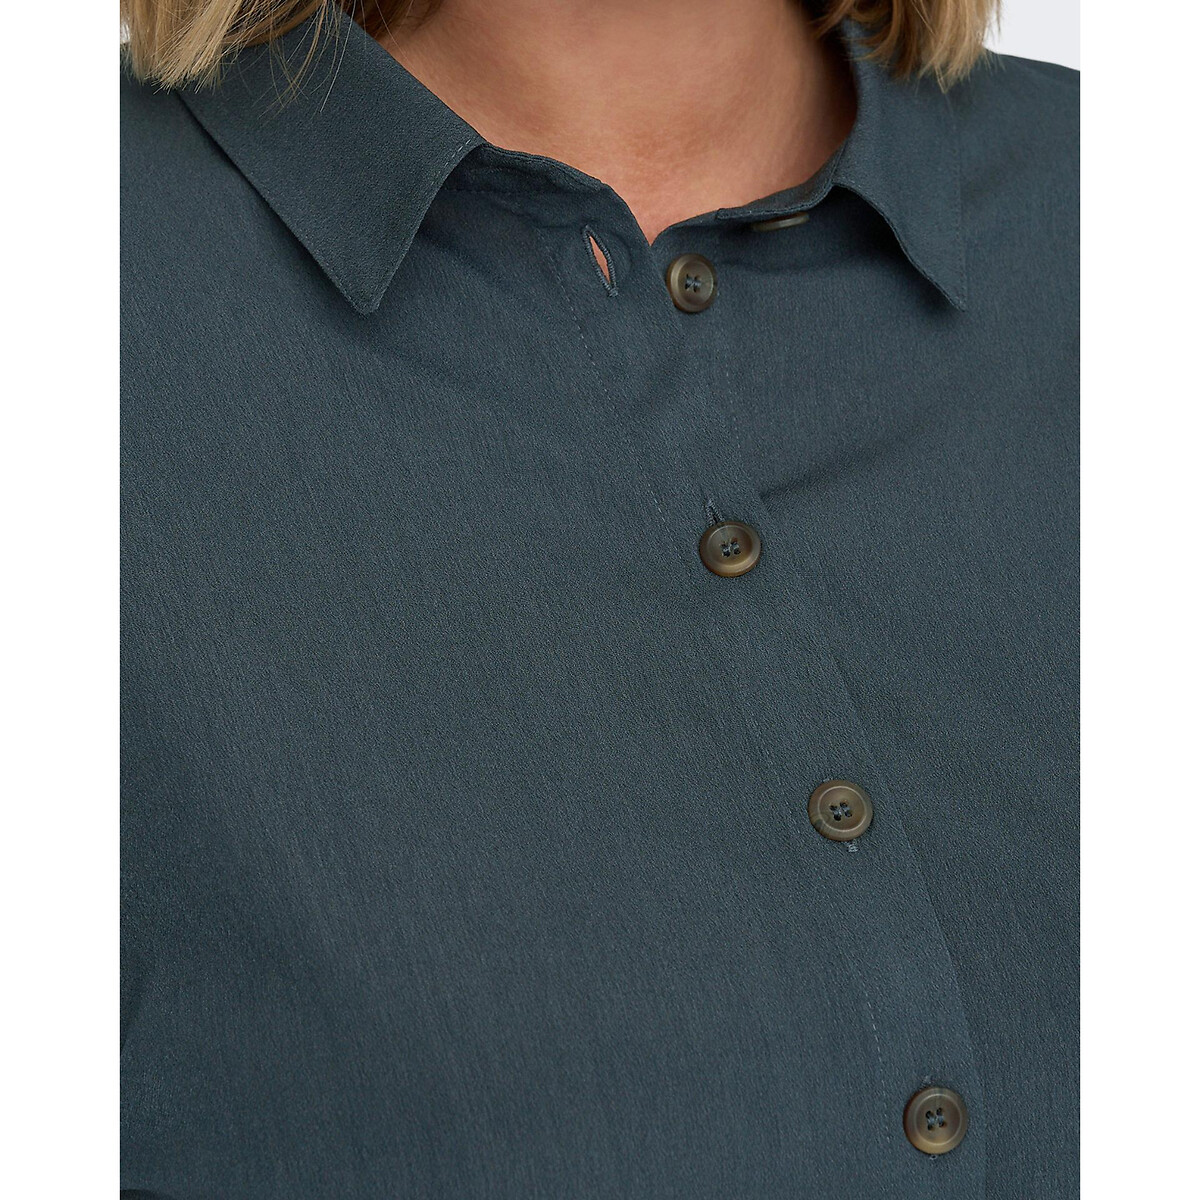 Платье-рубашка С короткими рукавами и принтом 60 синий LaRedoute, размер 60 - фото 3